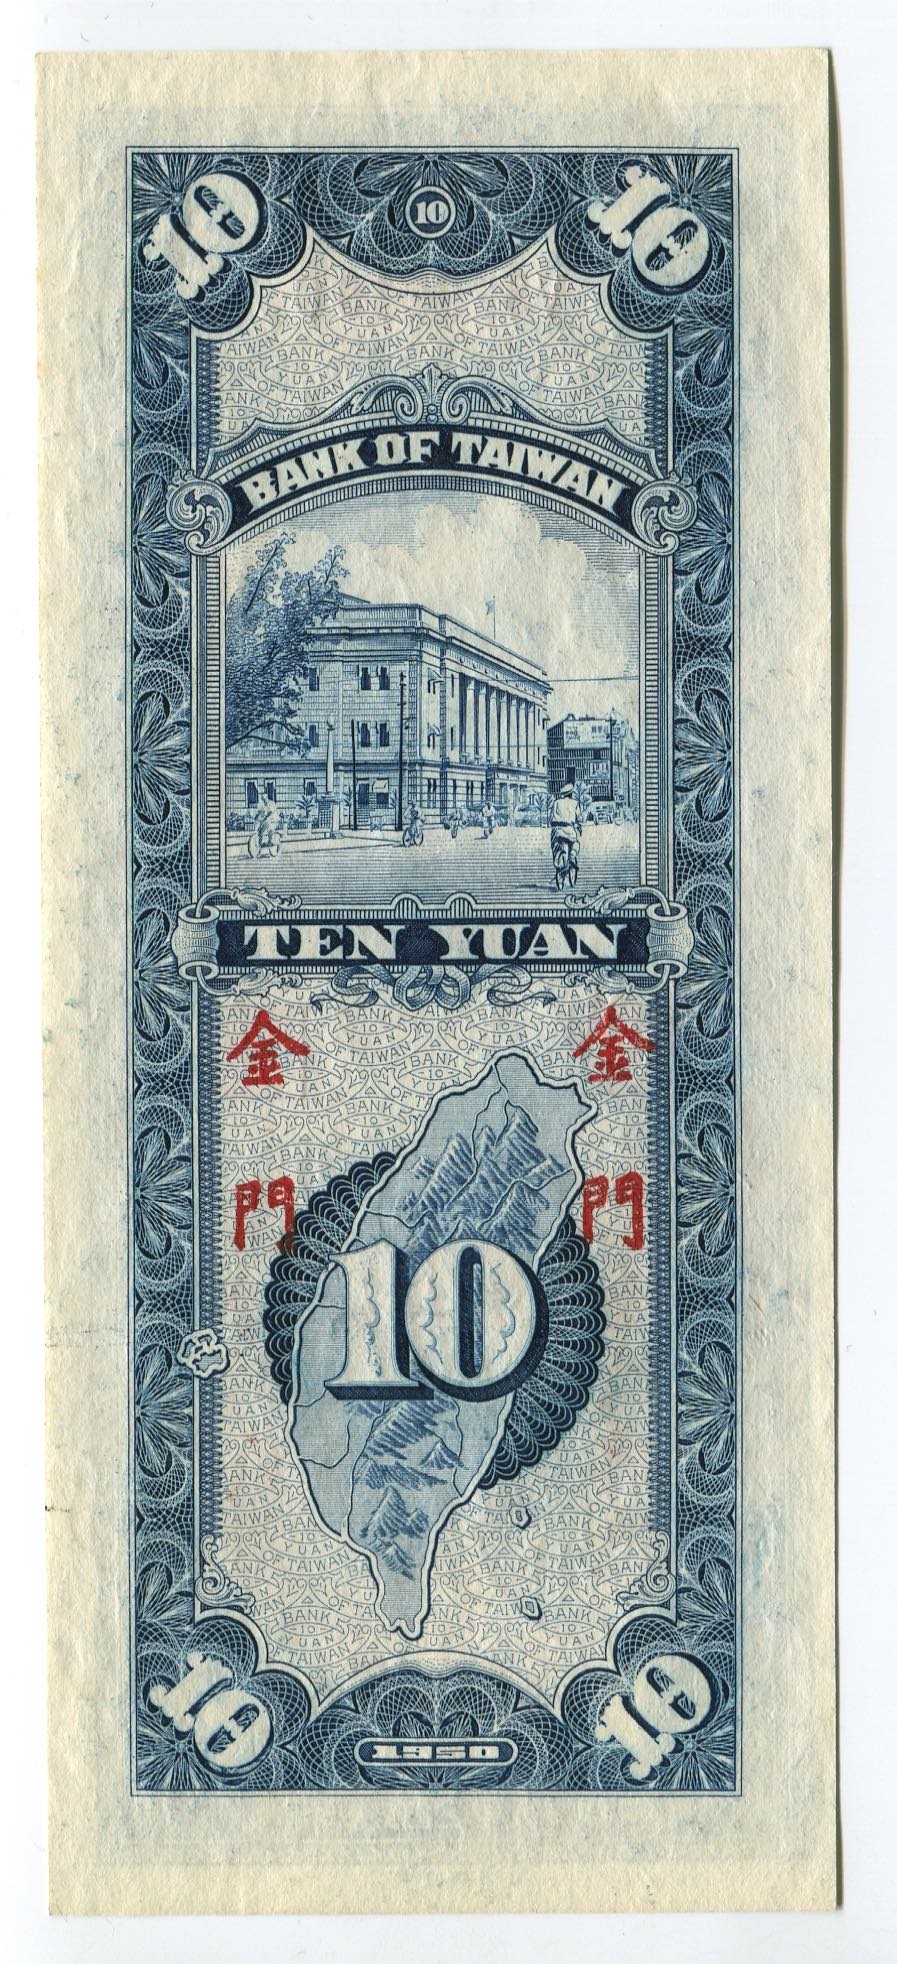 China -Taiwan 10 Yuan 1950